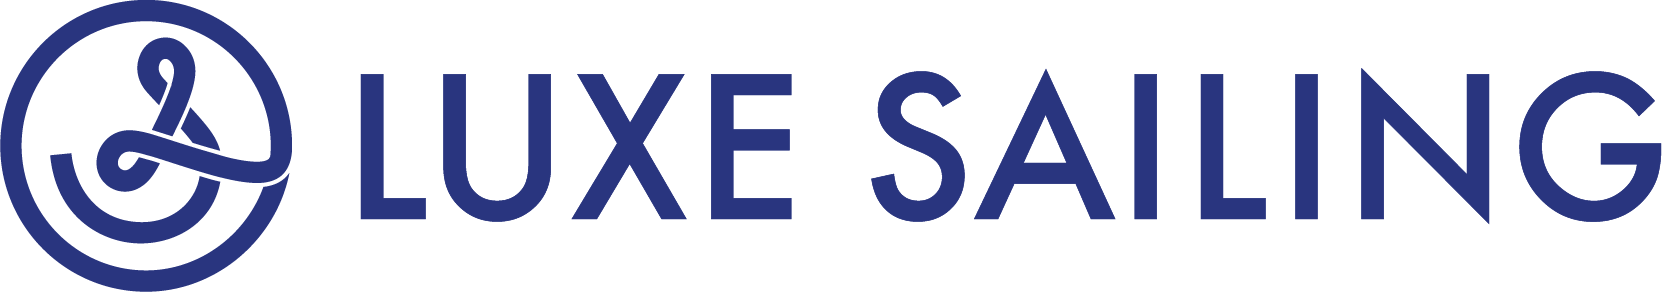 Luxe sailing logo